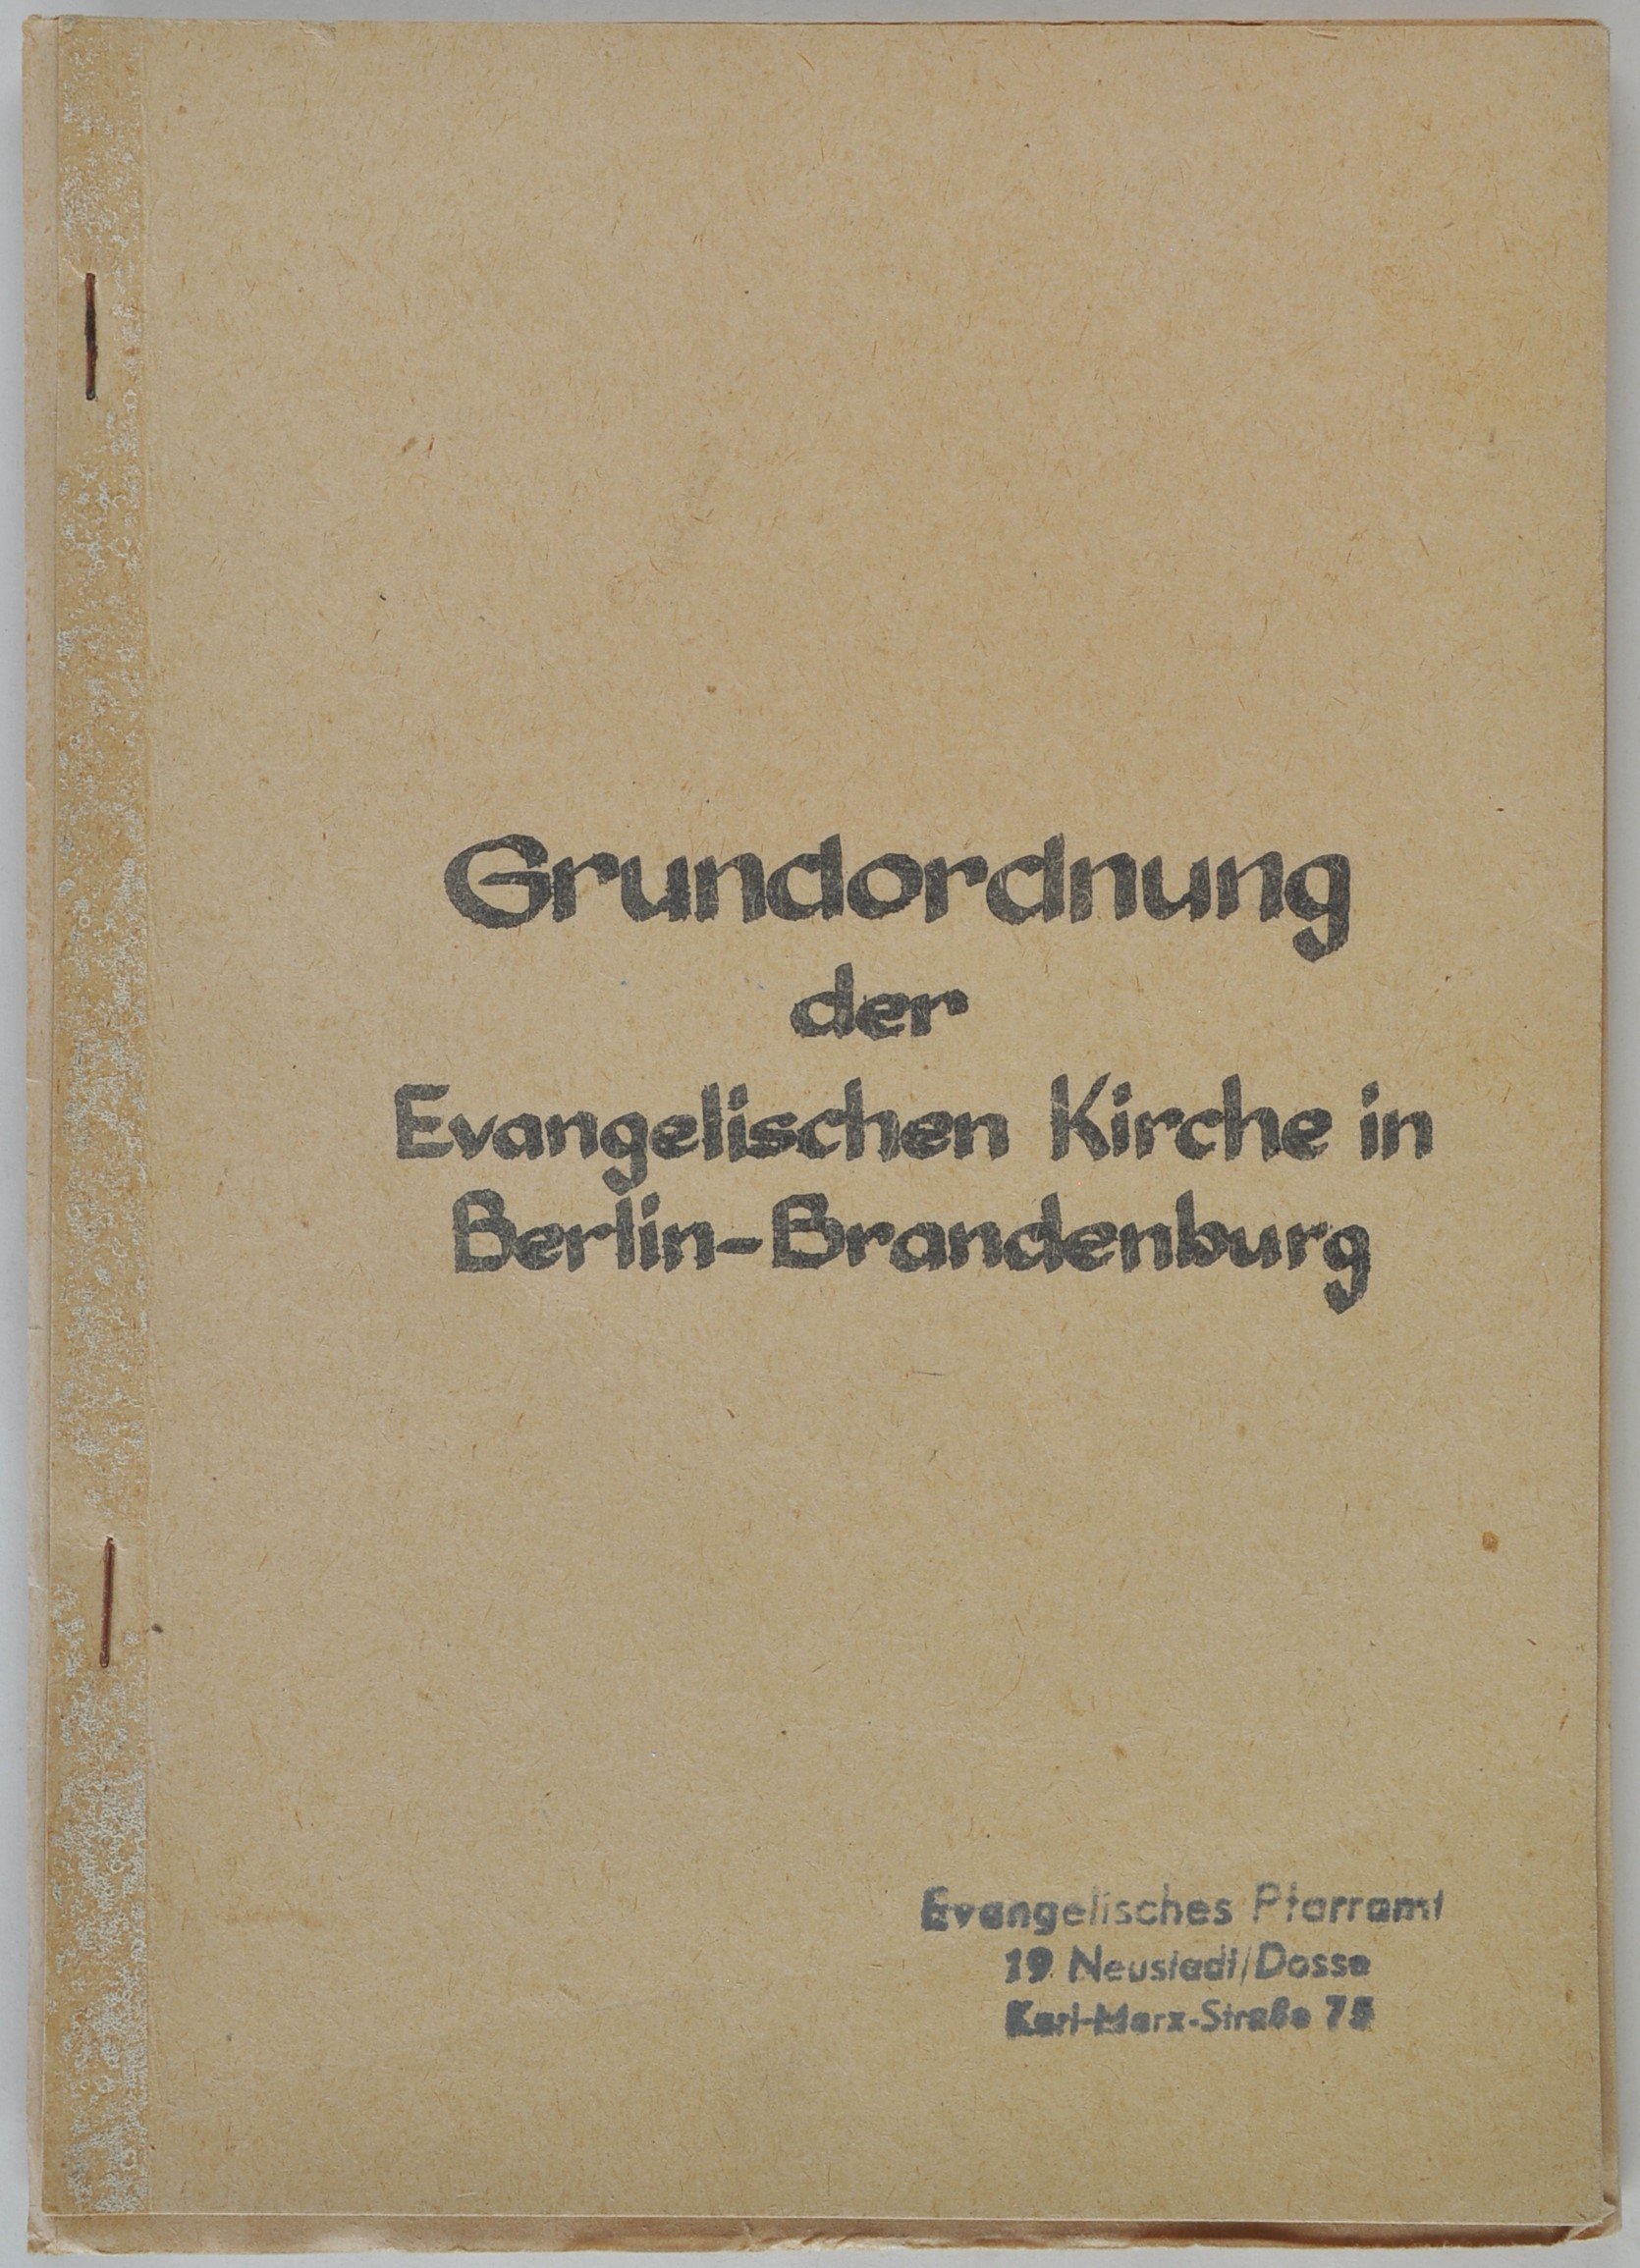 Heft: Grundordnung der Evangelischen Kirche in Berlin-Brandenburg von 1948/1973 (DDR Geschichtsmuseum im Dokumentationszentrum Perleberg CC BY-SA)